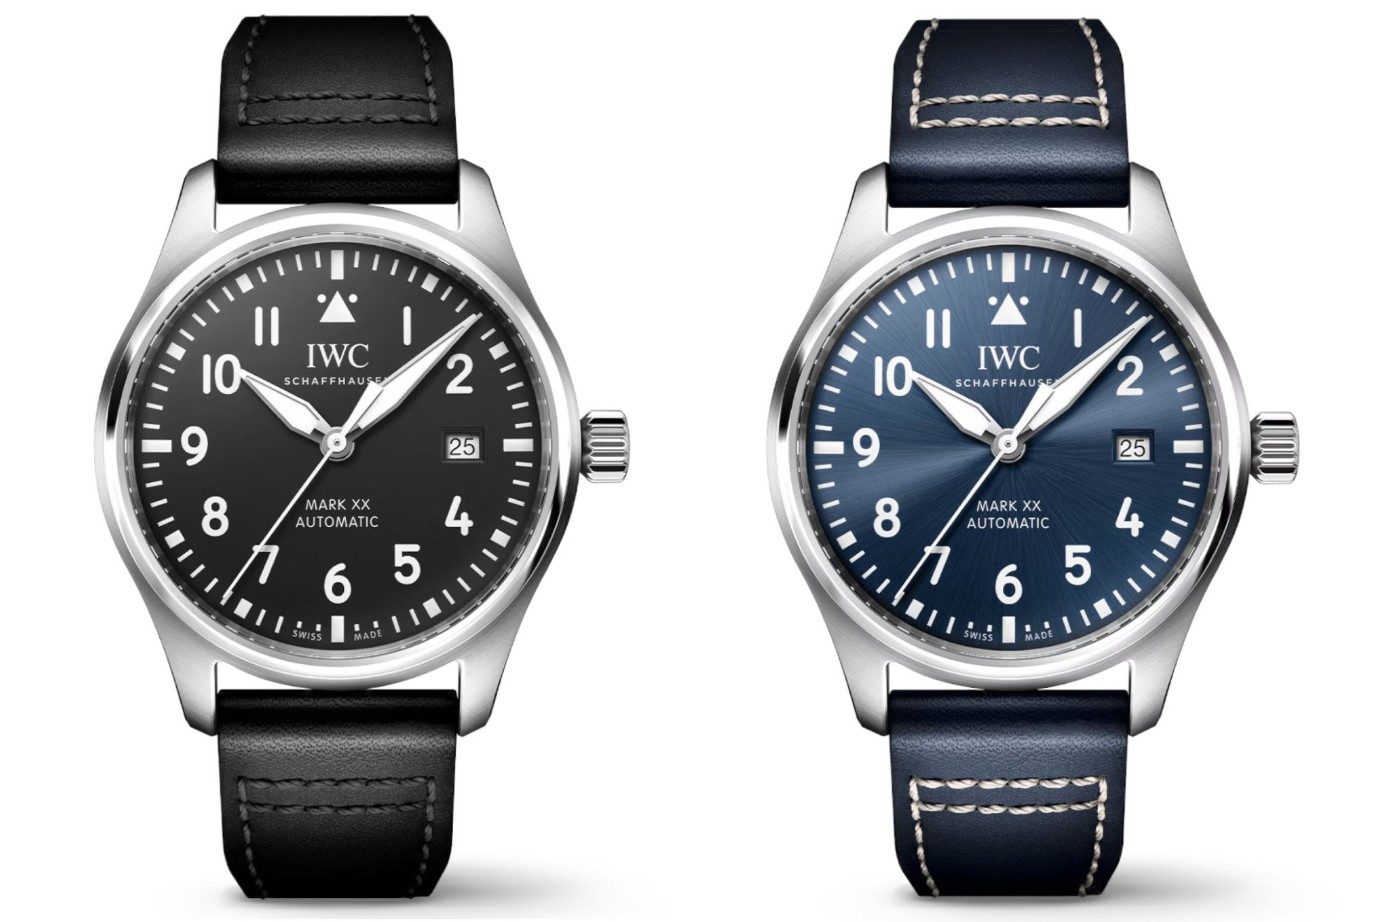 IWC Pilot's Watch Mark XX automatic date calendar watch for men